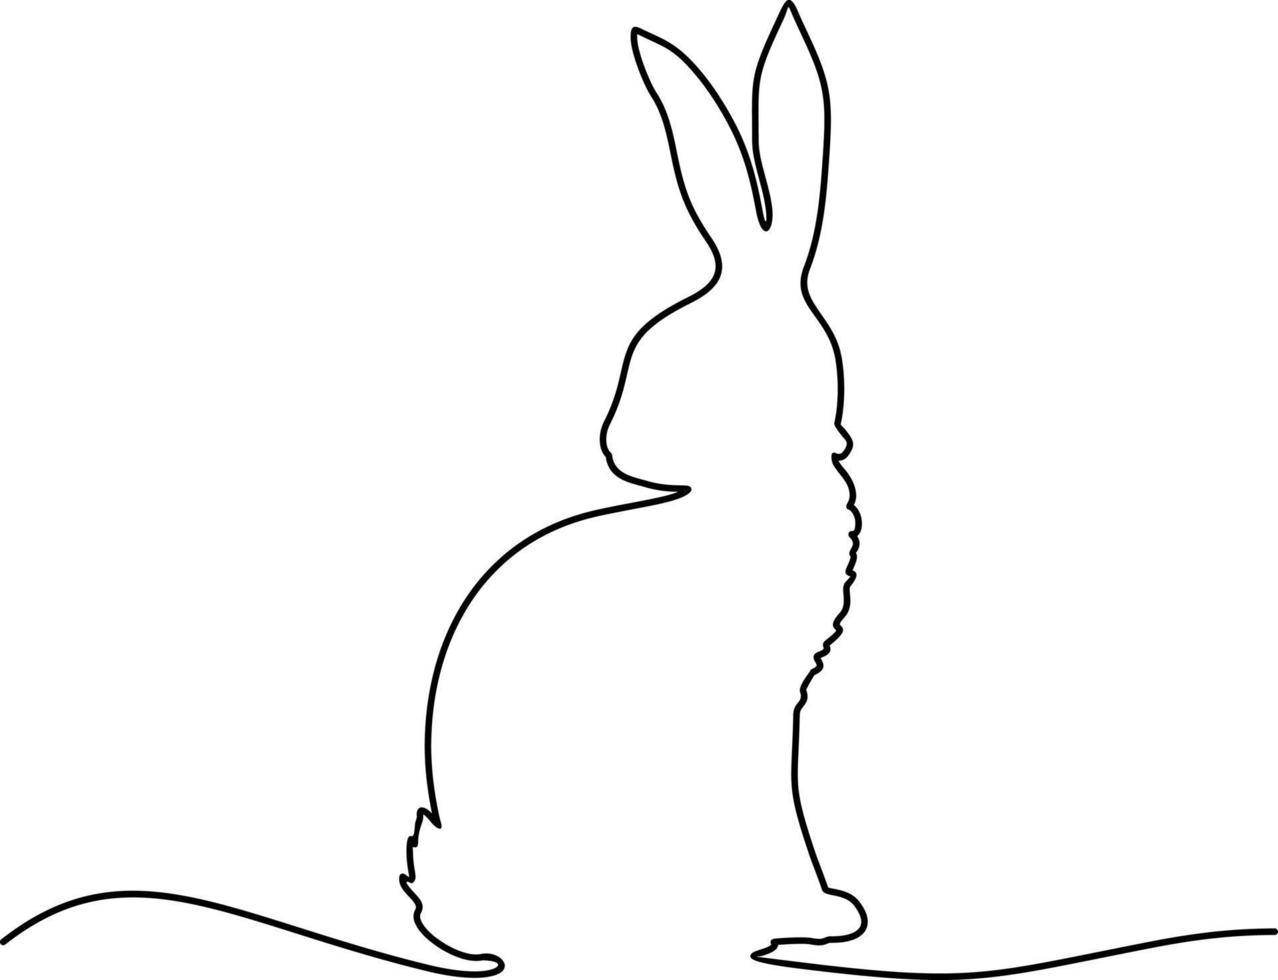 doorlopend lijn tekening van Pasen konijn. Pasen konijn doorlopend een lijn tekening. Pasen konijn banier in gemakkelijk een lijn stijl vector